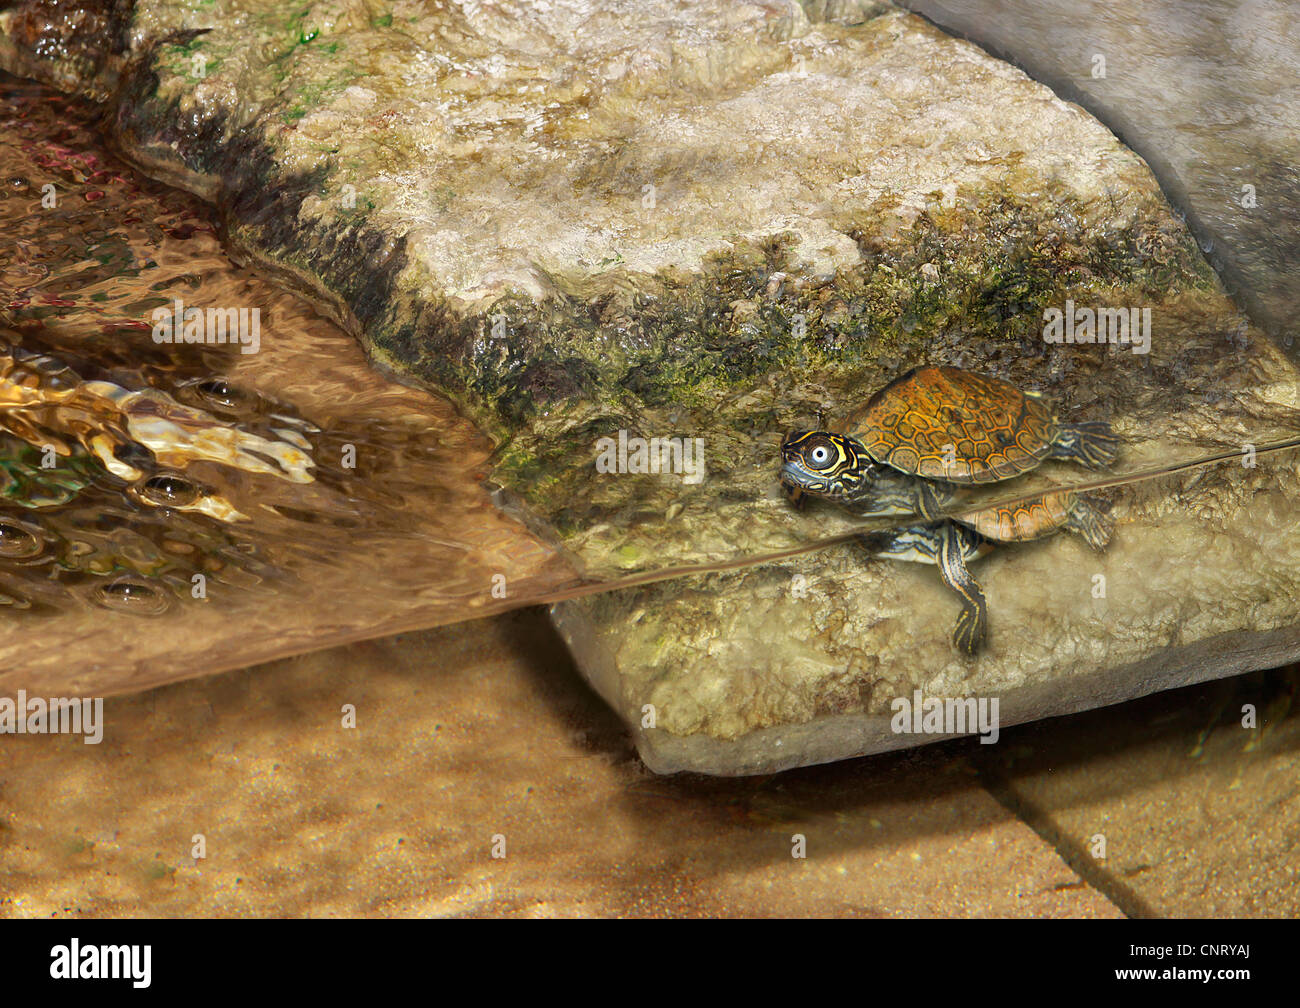 La tartaruga in un terrario Foto stock - Alamy